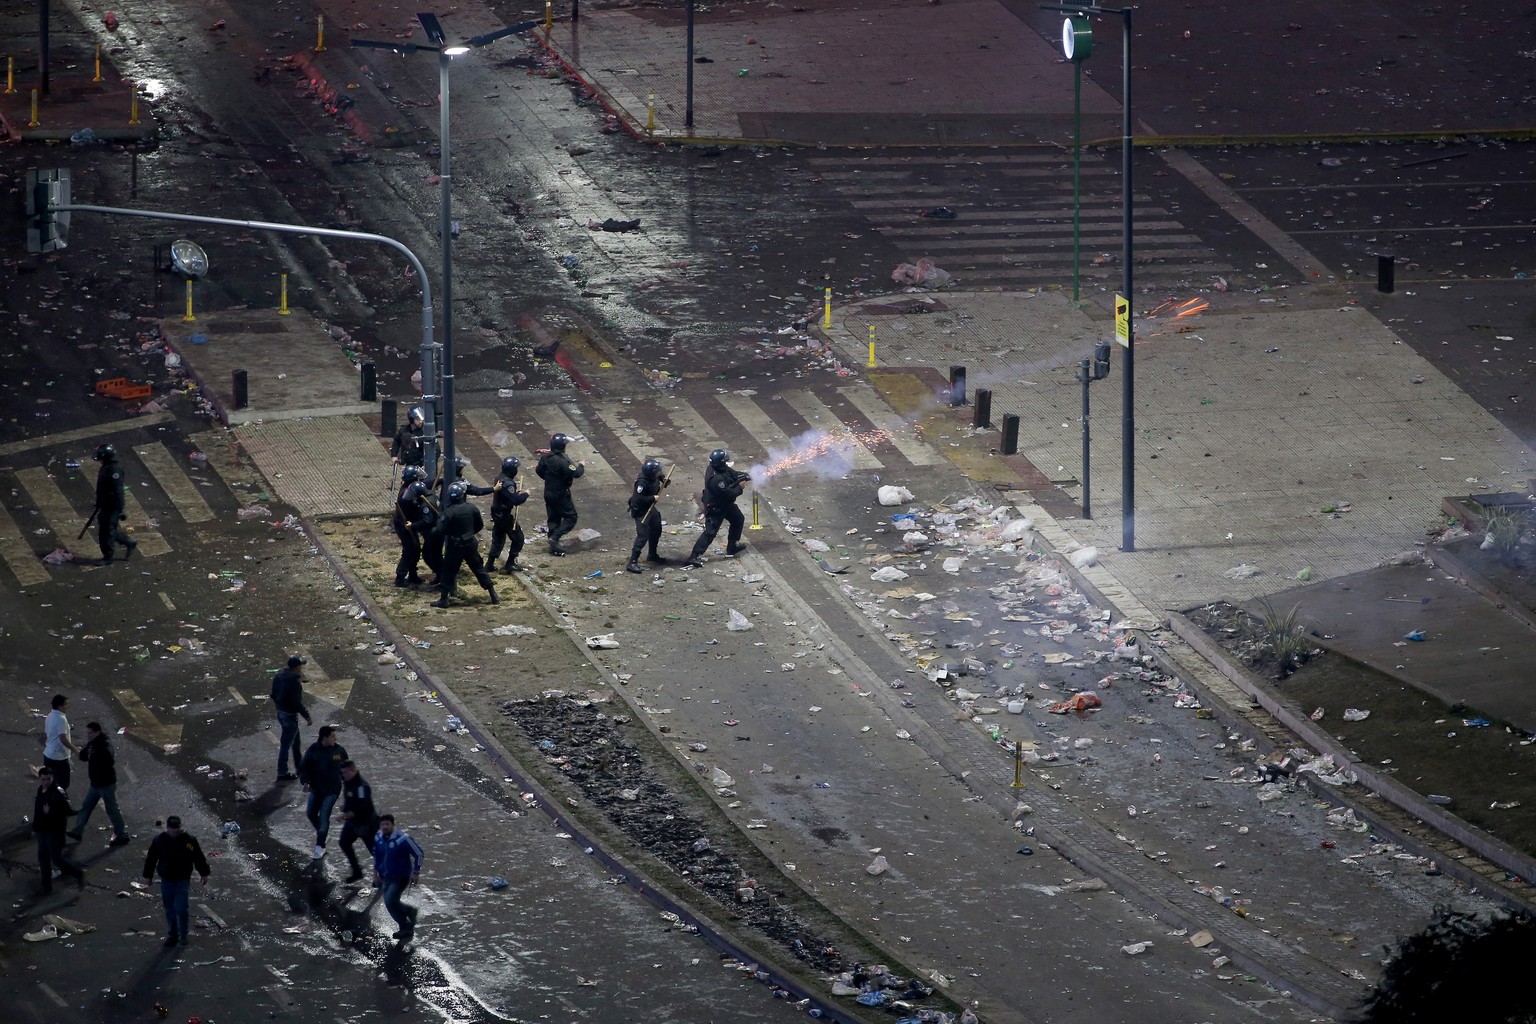 Bilder der Zerstörung – Polizei schiesst mit Gummischrott auf Randale.